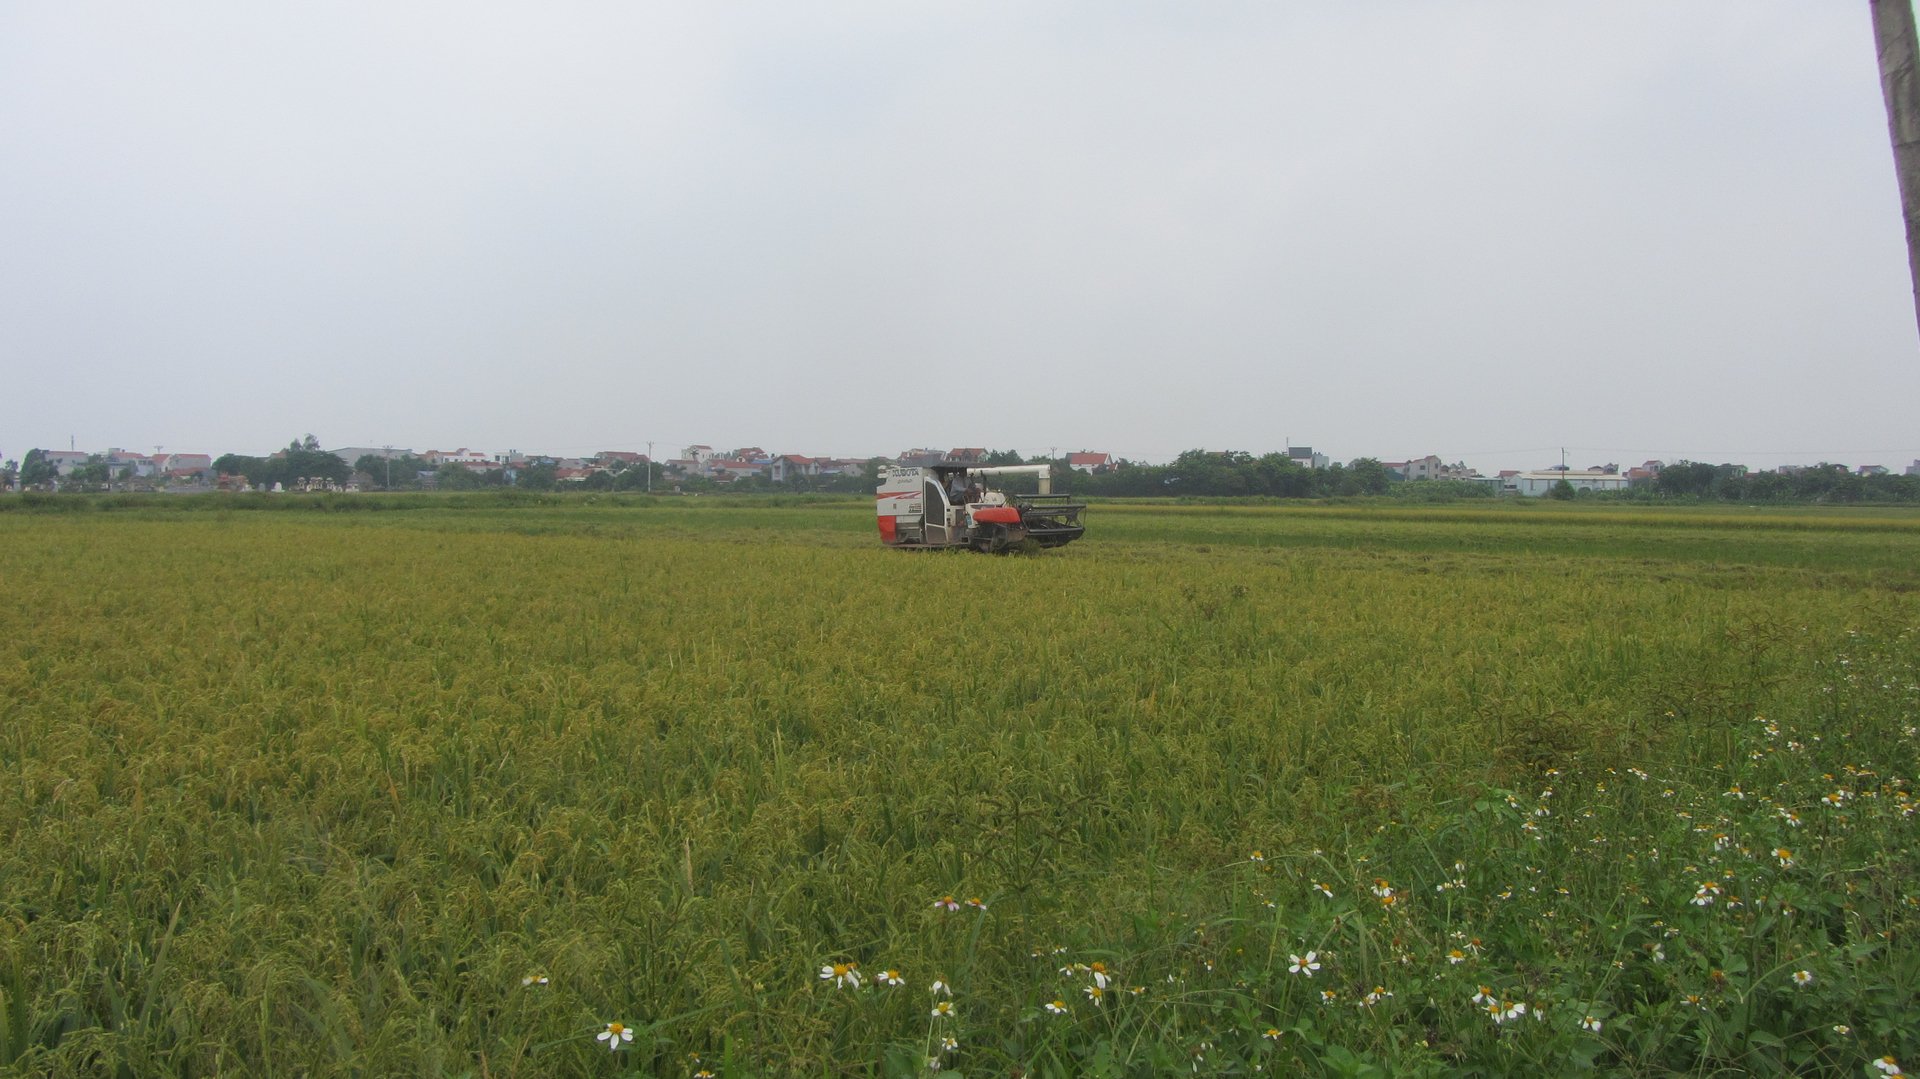 Máy gặt đập liên hợp thu hoạch lúa trong mô hình của ông Trọng. Ảnh: Hải Tiến.